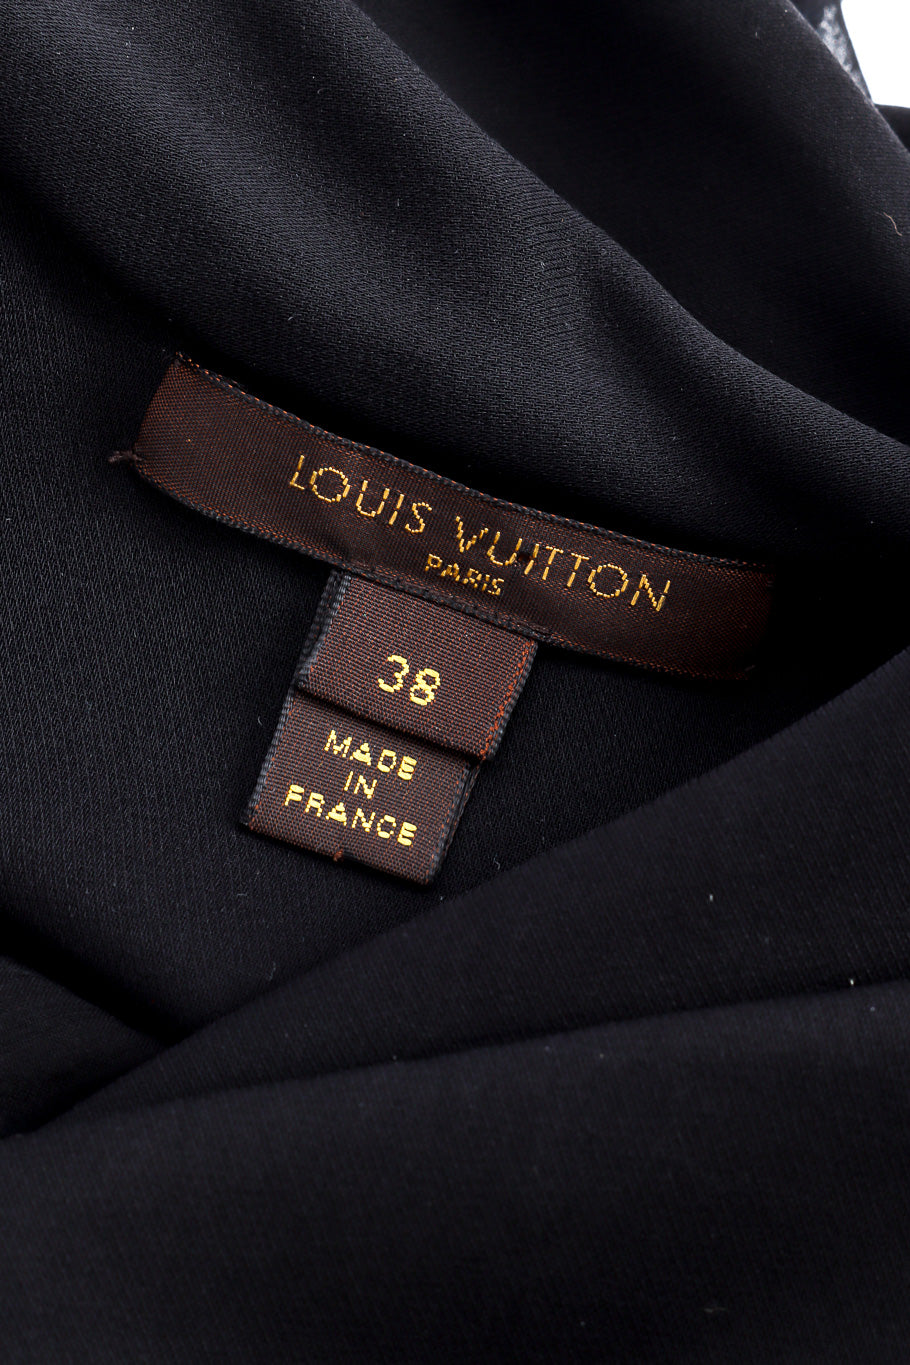 Louis Vuitton sequin blouse designer label @recessla